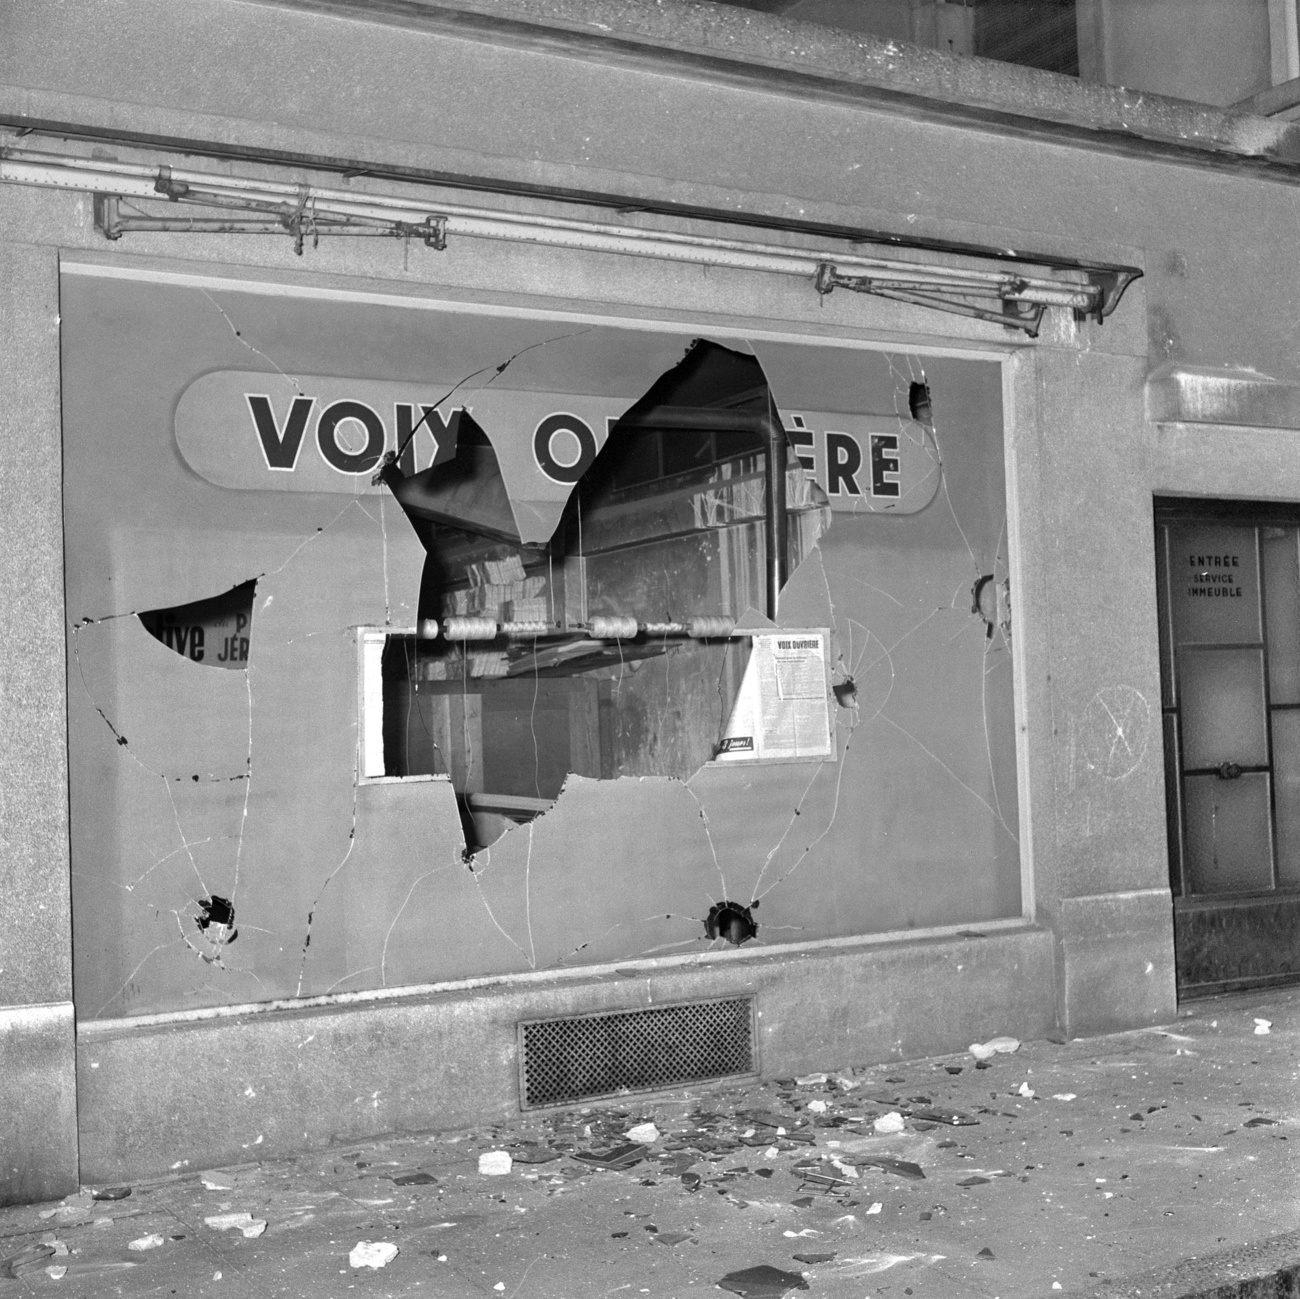 После митинга 7 ноября 1956 года в Женеве в поддержку венгерского восстания на здание коммунистической газеты Voix Ouvriere было совершено нападение.